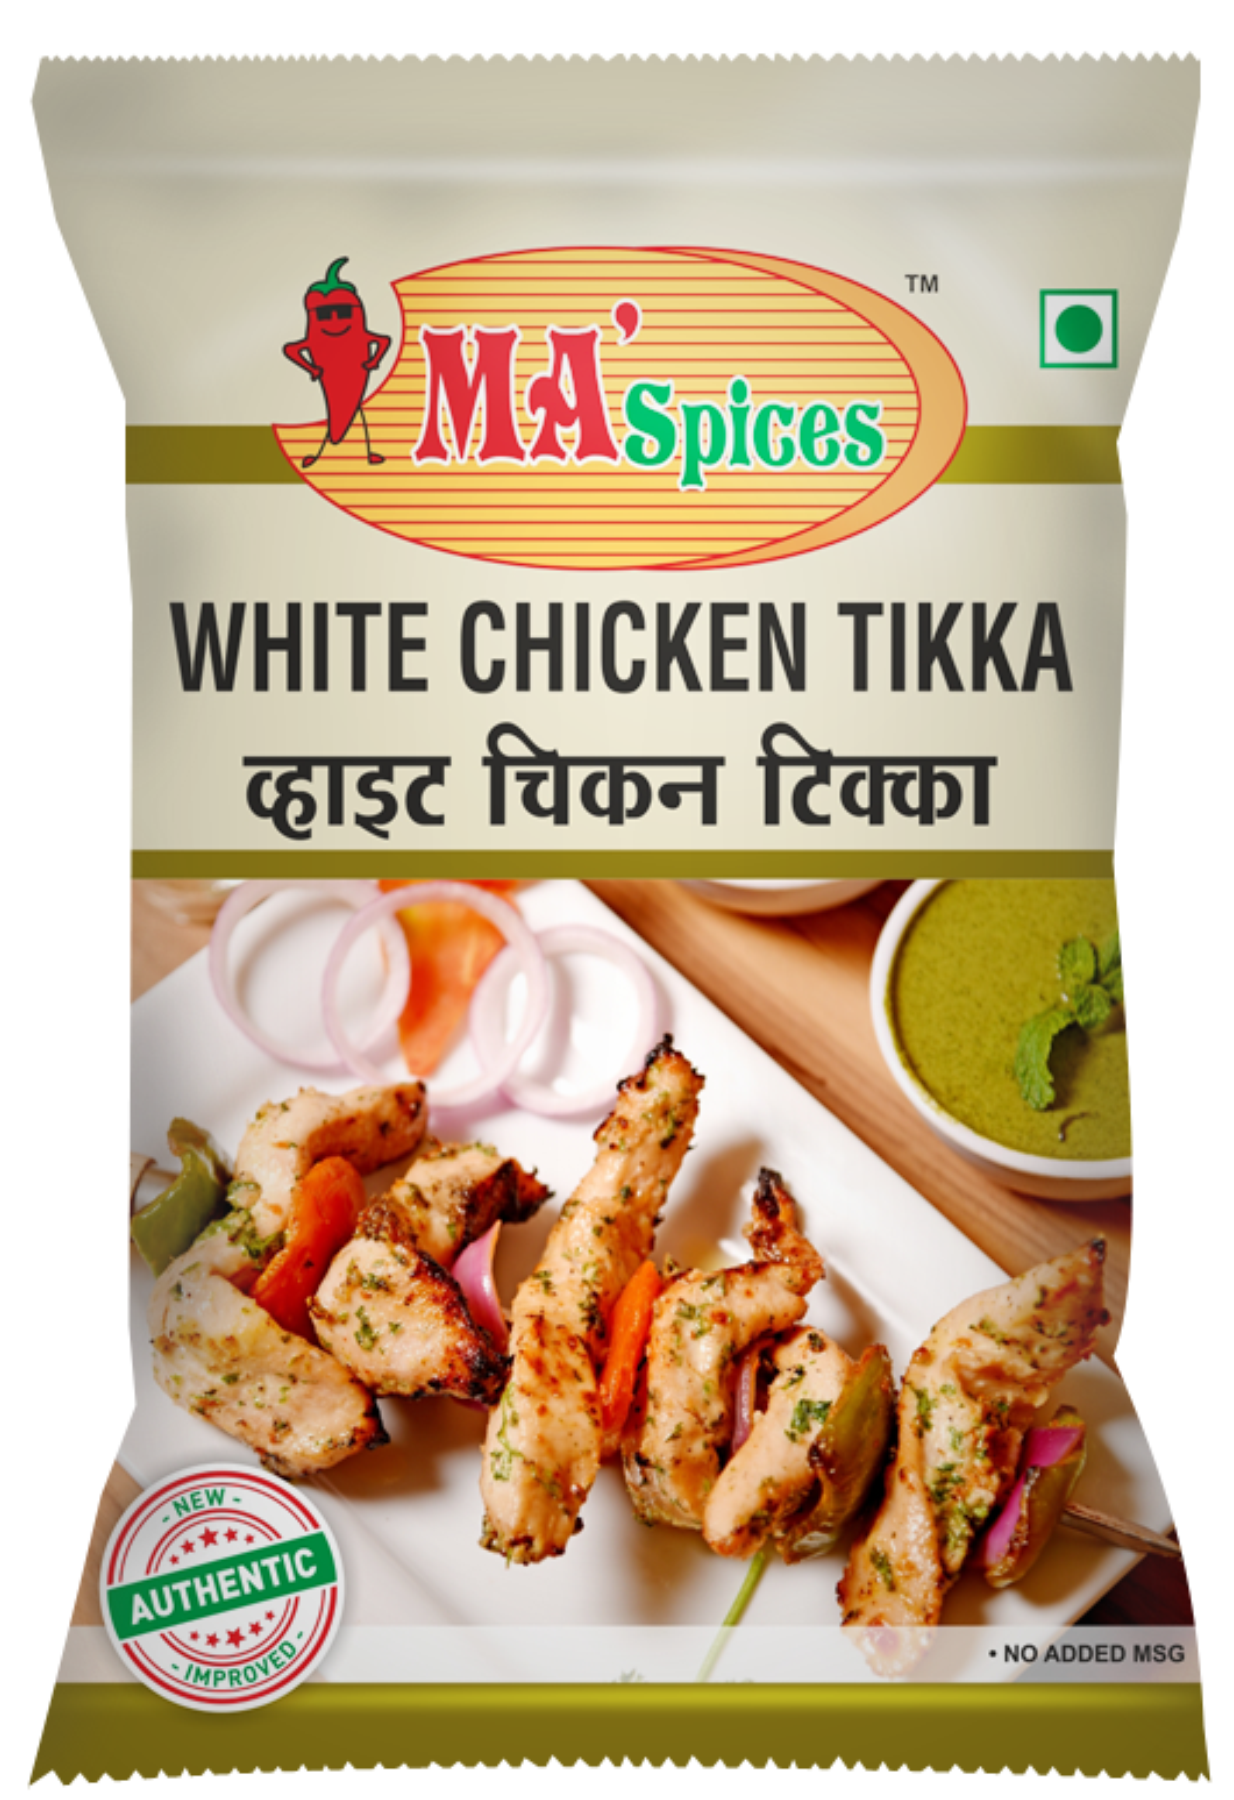 Chicken Schezwan Tikka Masala | Ma Spices